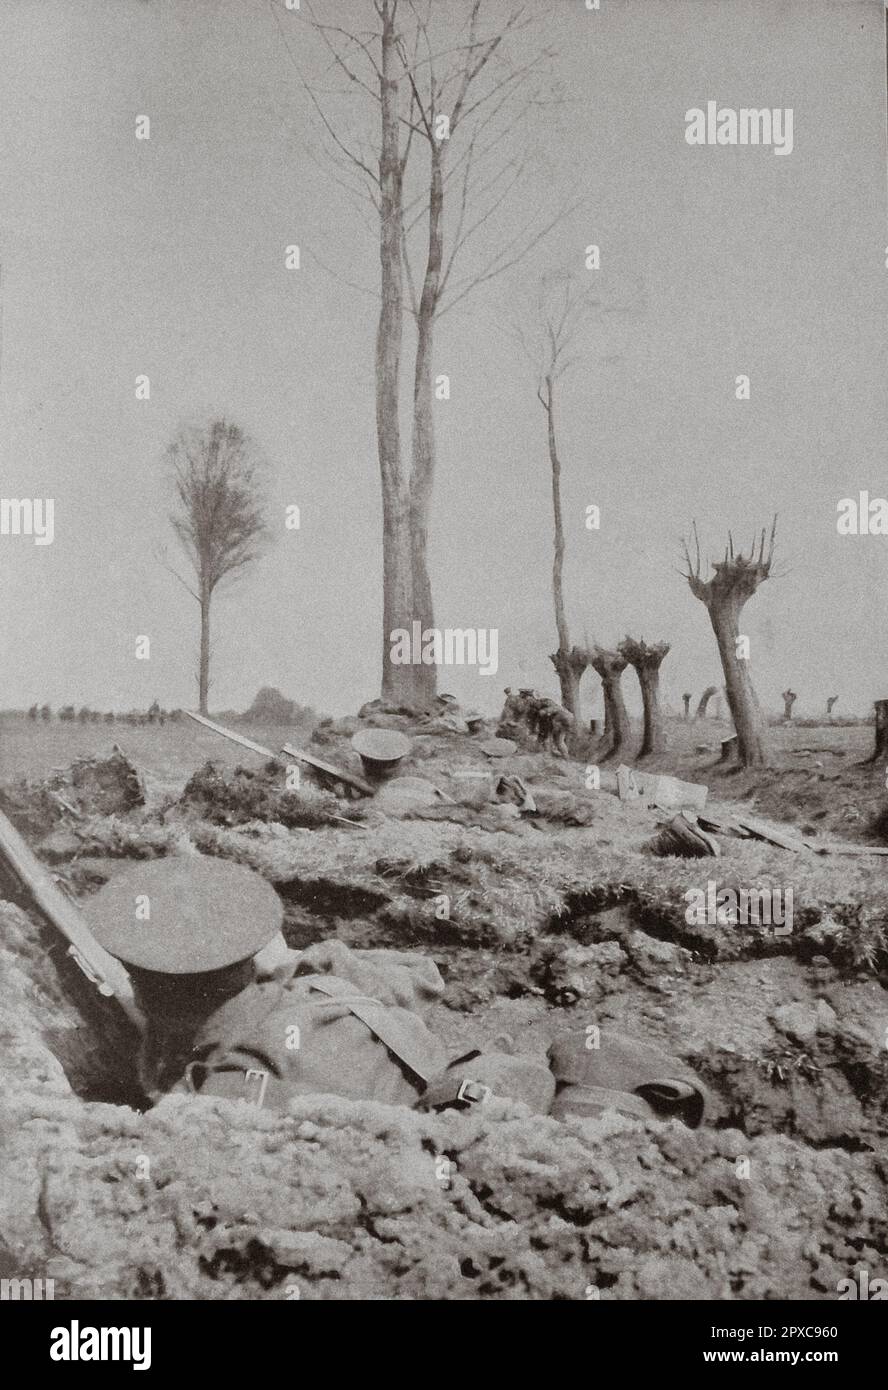 Prima guerra mondiale La seconda battaglia di Ypres. Nel settore inglese: Il 'King's Liverpools' in prima linea, prima dell'attacco. Durante la prima guerra mondiale, la seconda battaglia di Ypres fu combattuta dal 22 aprile al 25 maggio 1915 per il controllo dell'alta terra di importanza tattica a est e a sud della città fiamminga di Ypres, nel Belgio occidentale. La prima battaglia di Ypres era stata combattuta l'autunno precedente. La seconda battaglia di Ypres fu il primo uso di massa da parte della Germania di gas velenoso sul fronte occidentale. Foto Stock